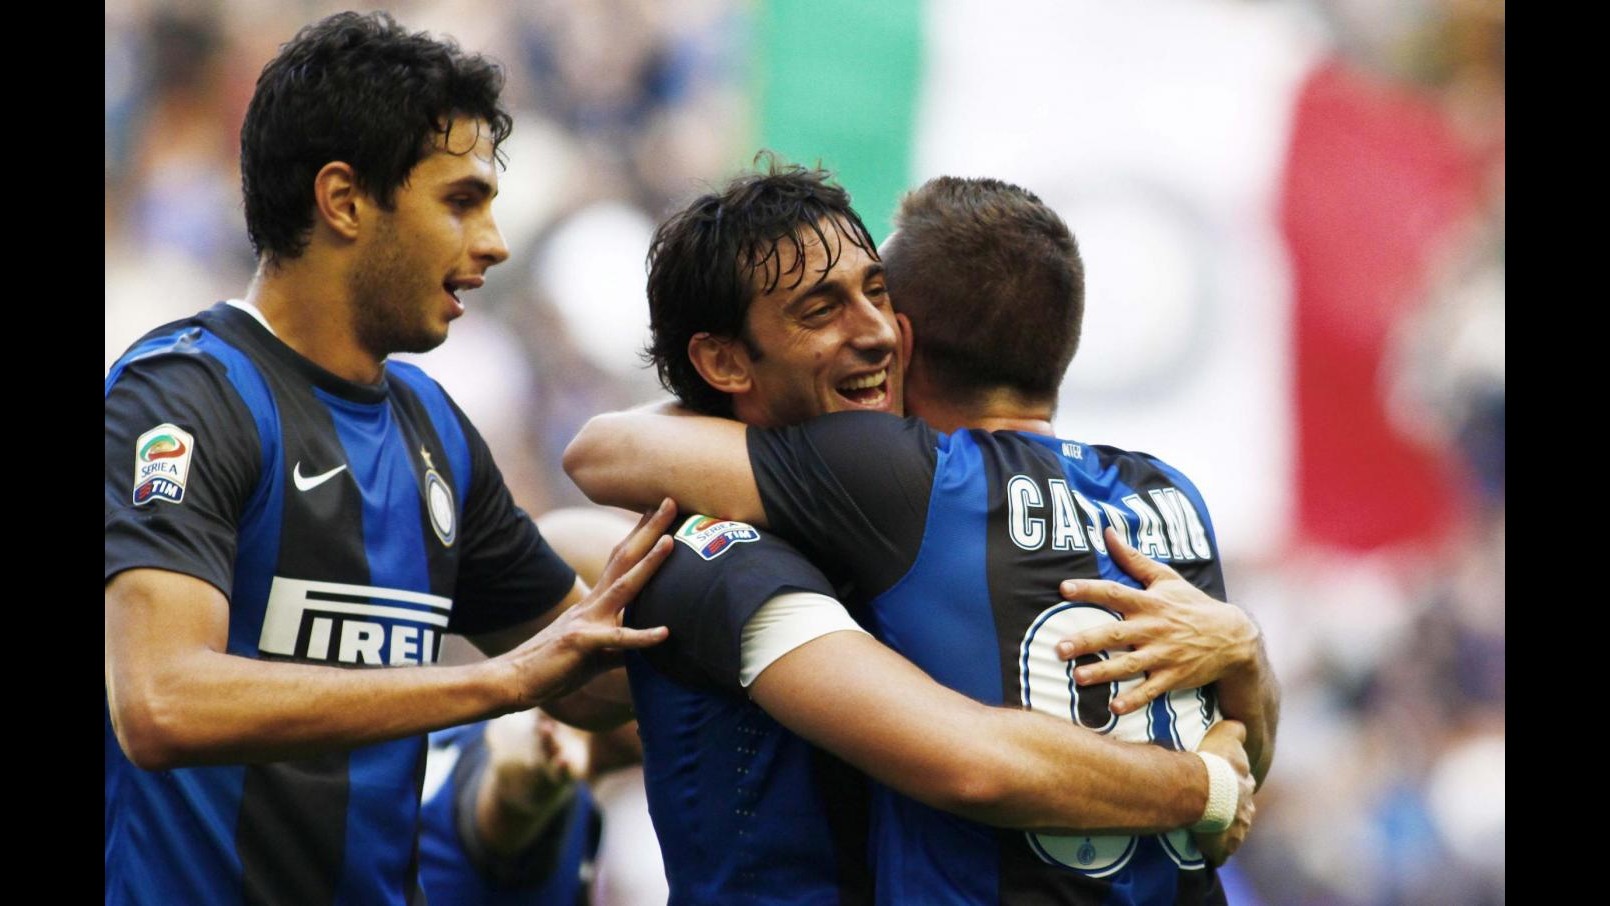 Serie A, Cassano-Palacio fanno volare l’Inter. Vincono Udinese e Parma